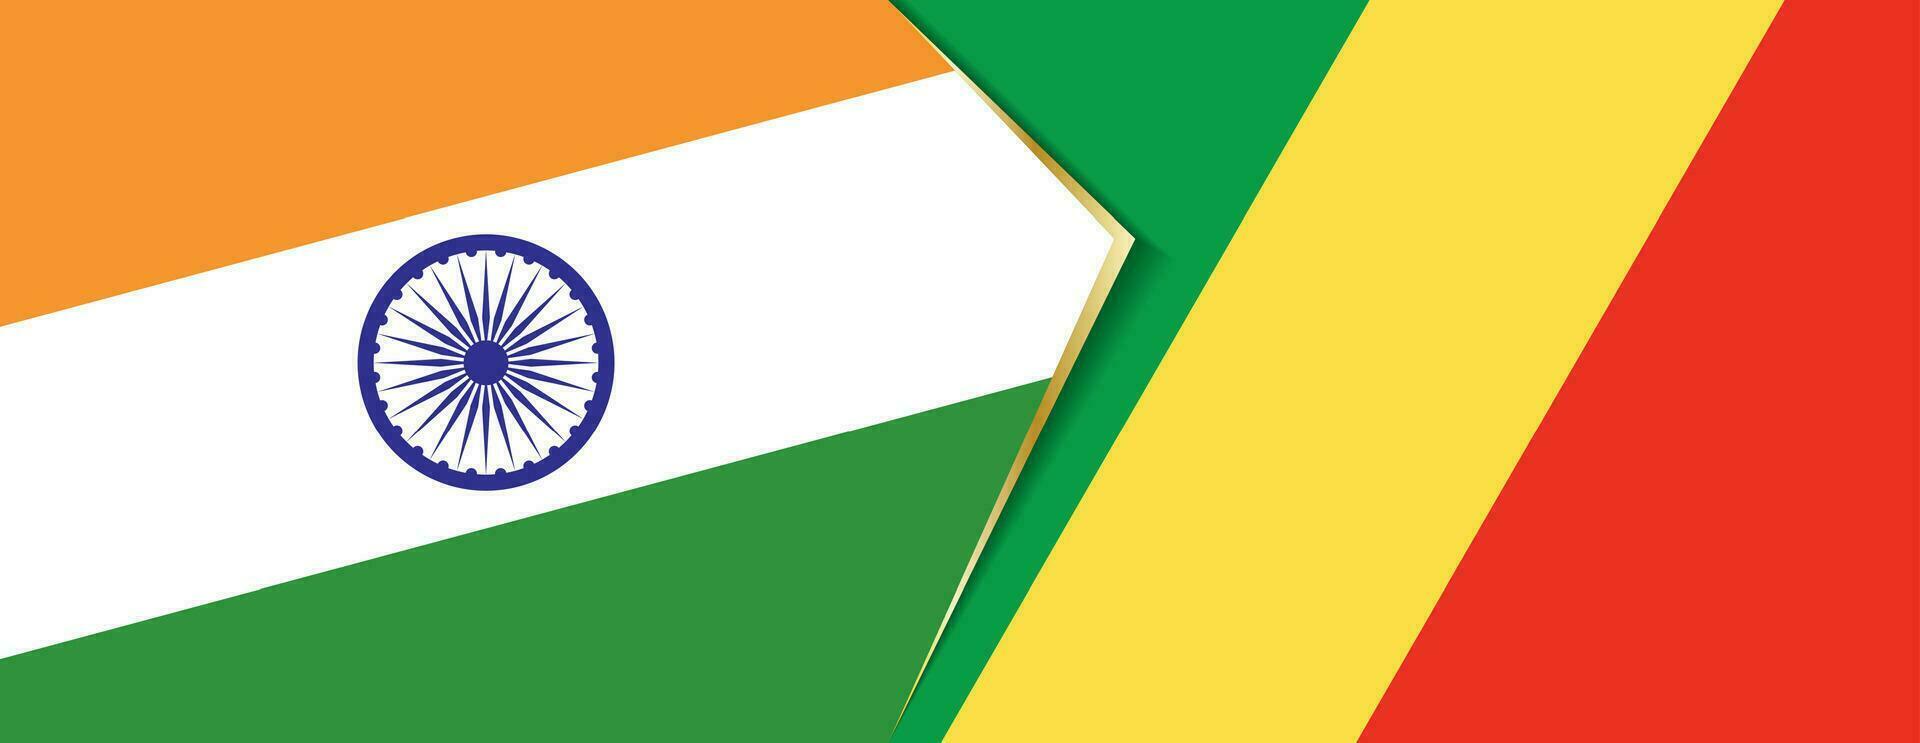 Indien och kongo flaggor, två vektor flaggor.